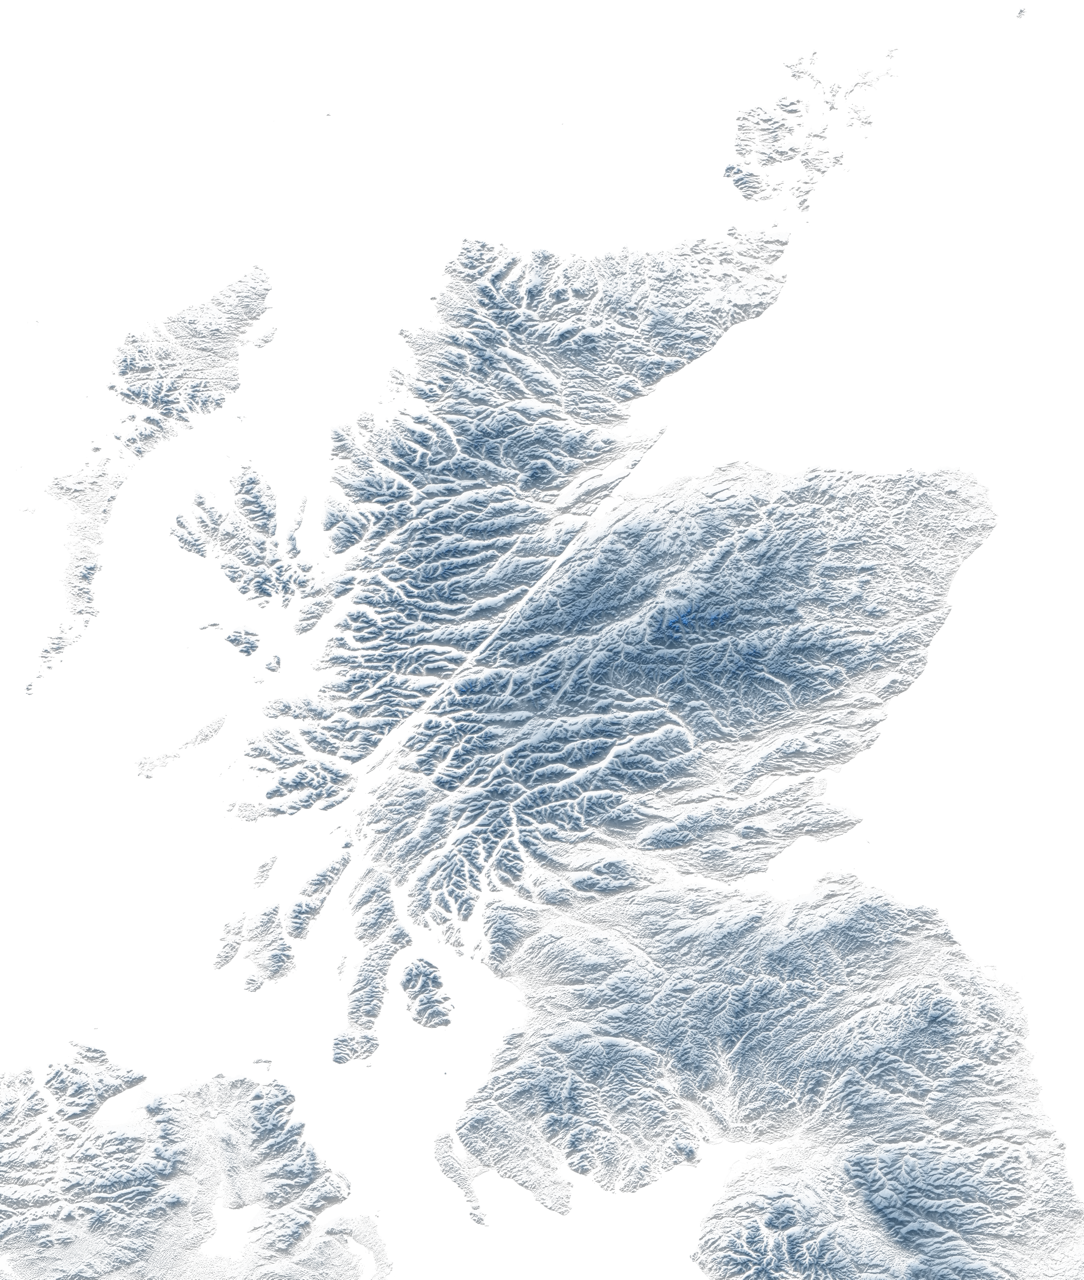 Scotland Topographic Map